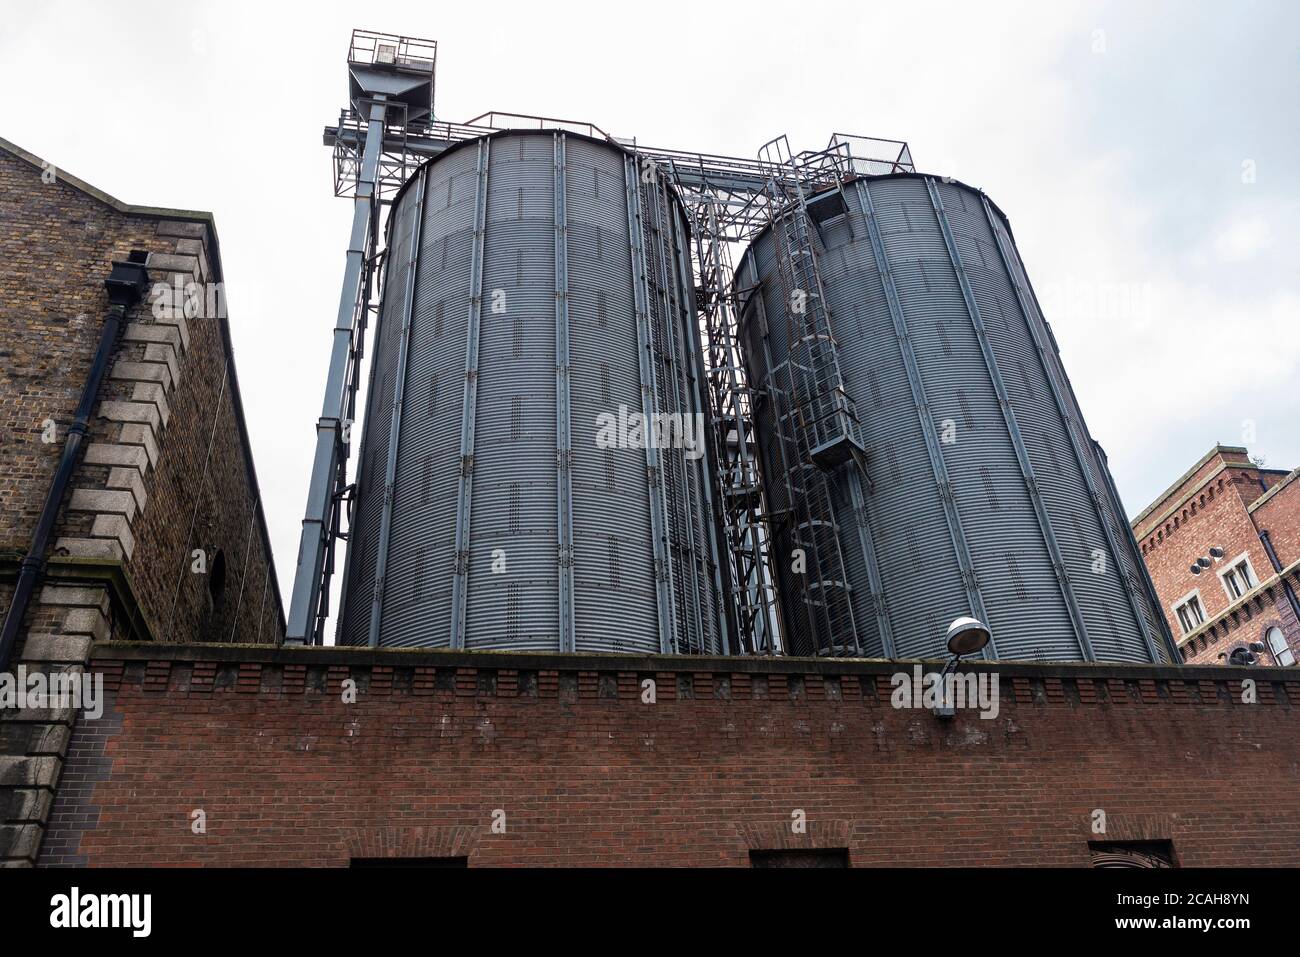 Silo nella fabbrica della birra Guinness (St. James Gate Brewery) a Dublino, Irlanda Foto Stock